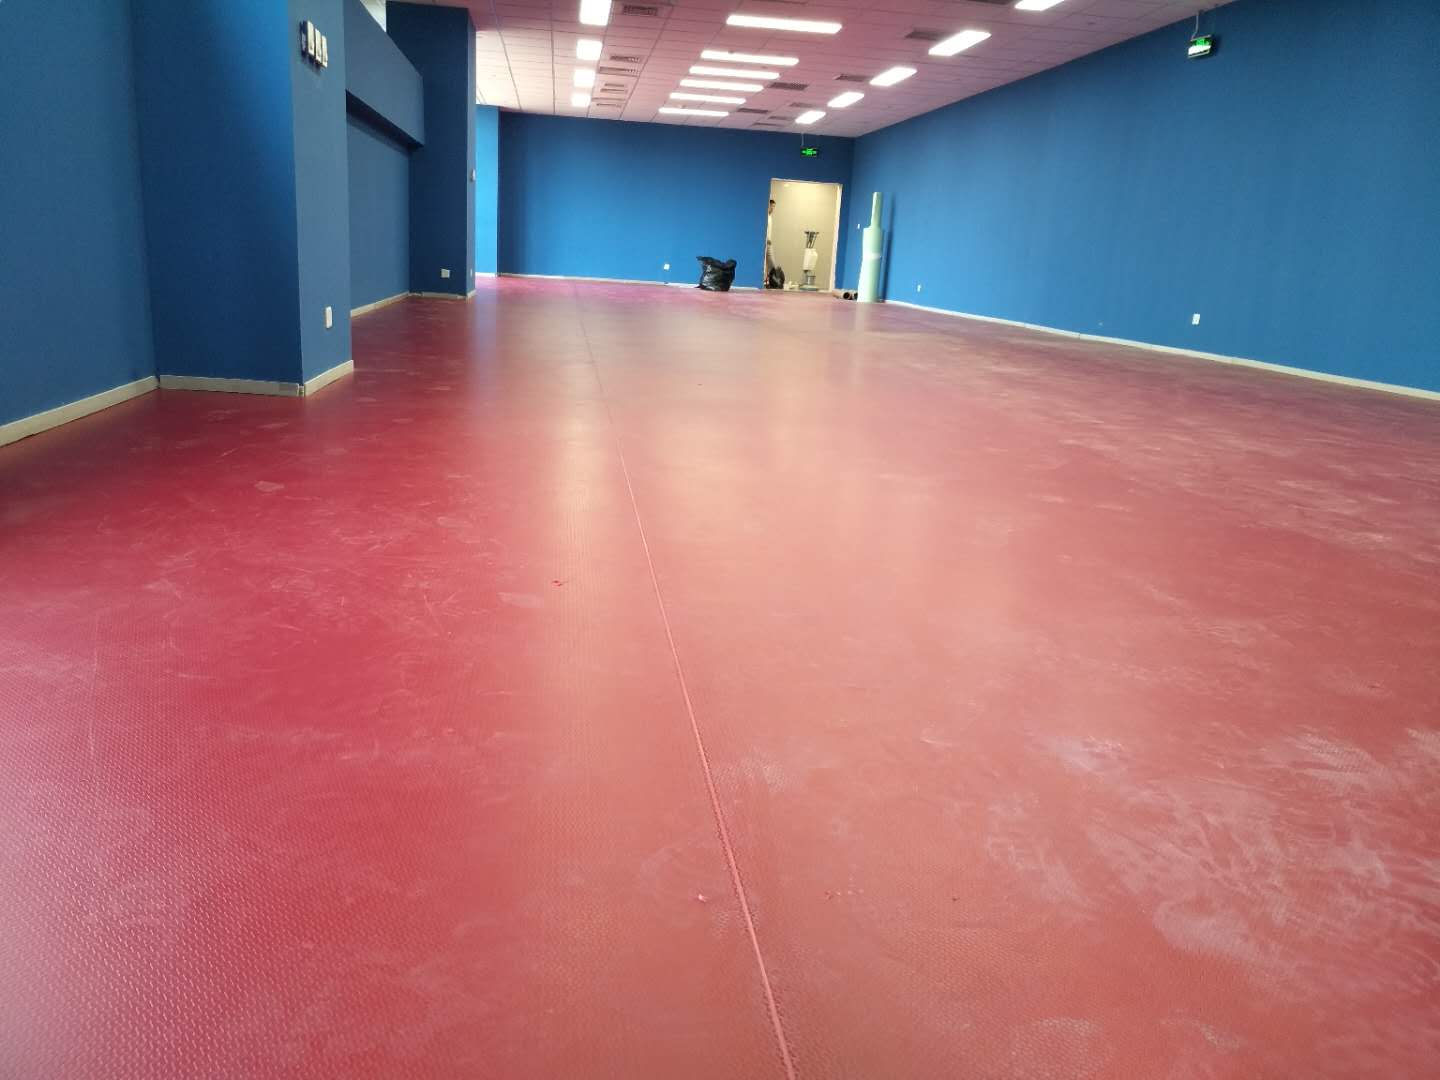 祝贺中光华会计事务所乒乓球活动室塑胶地板铺装完工！